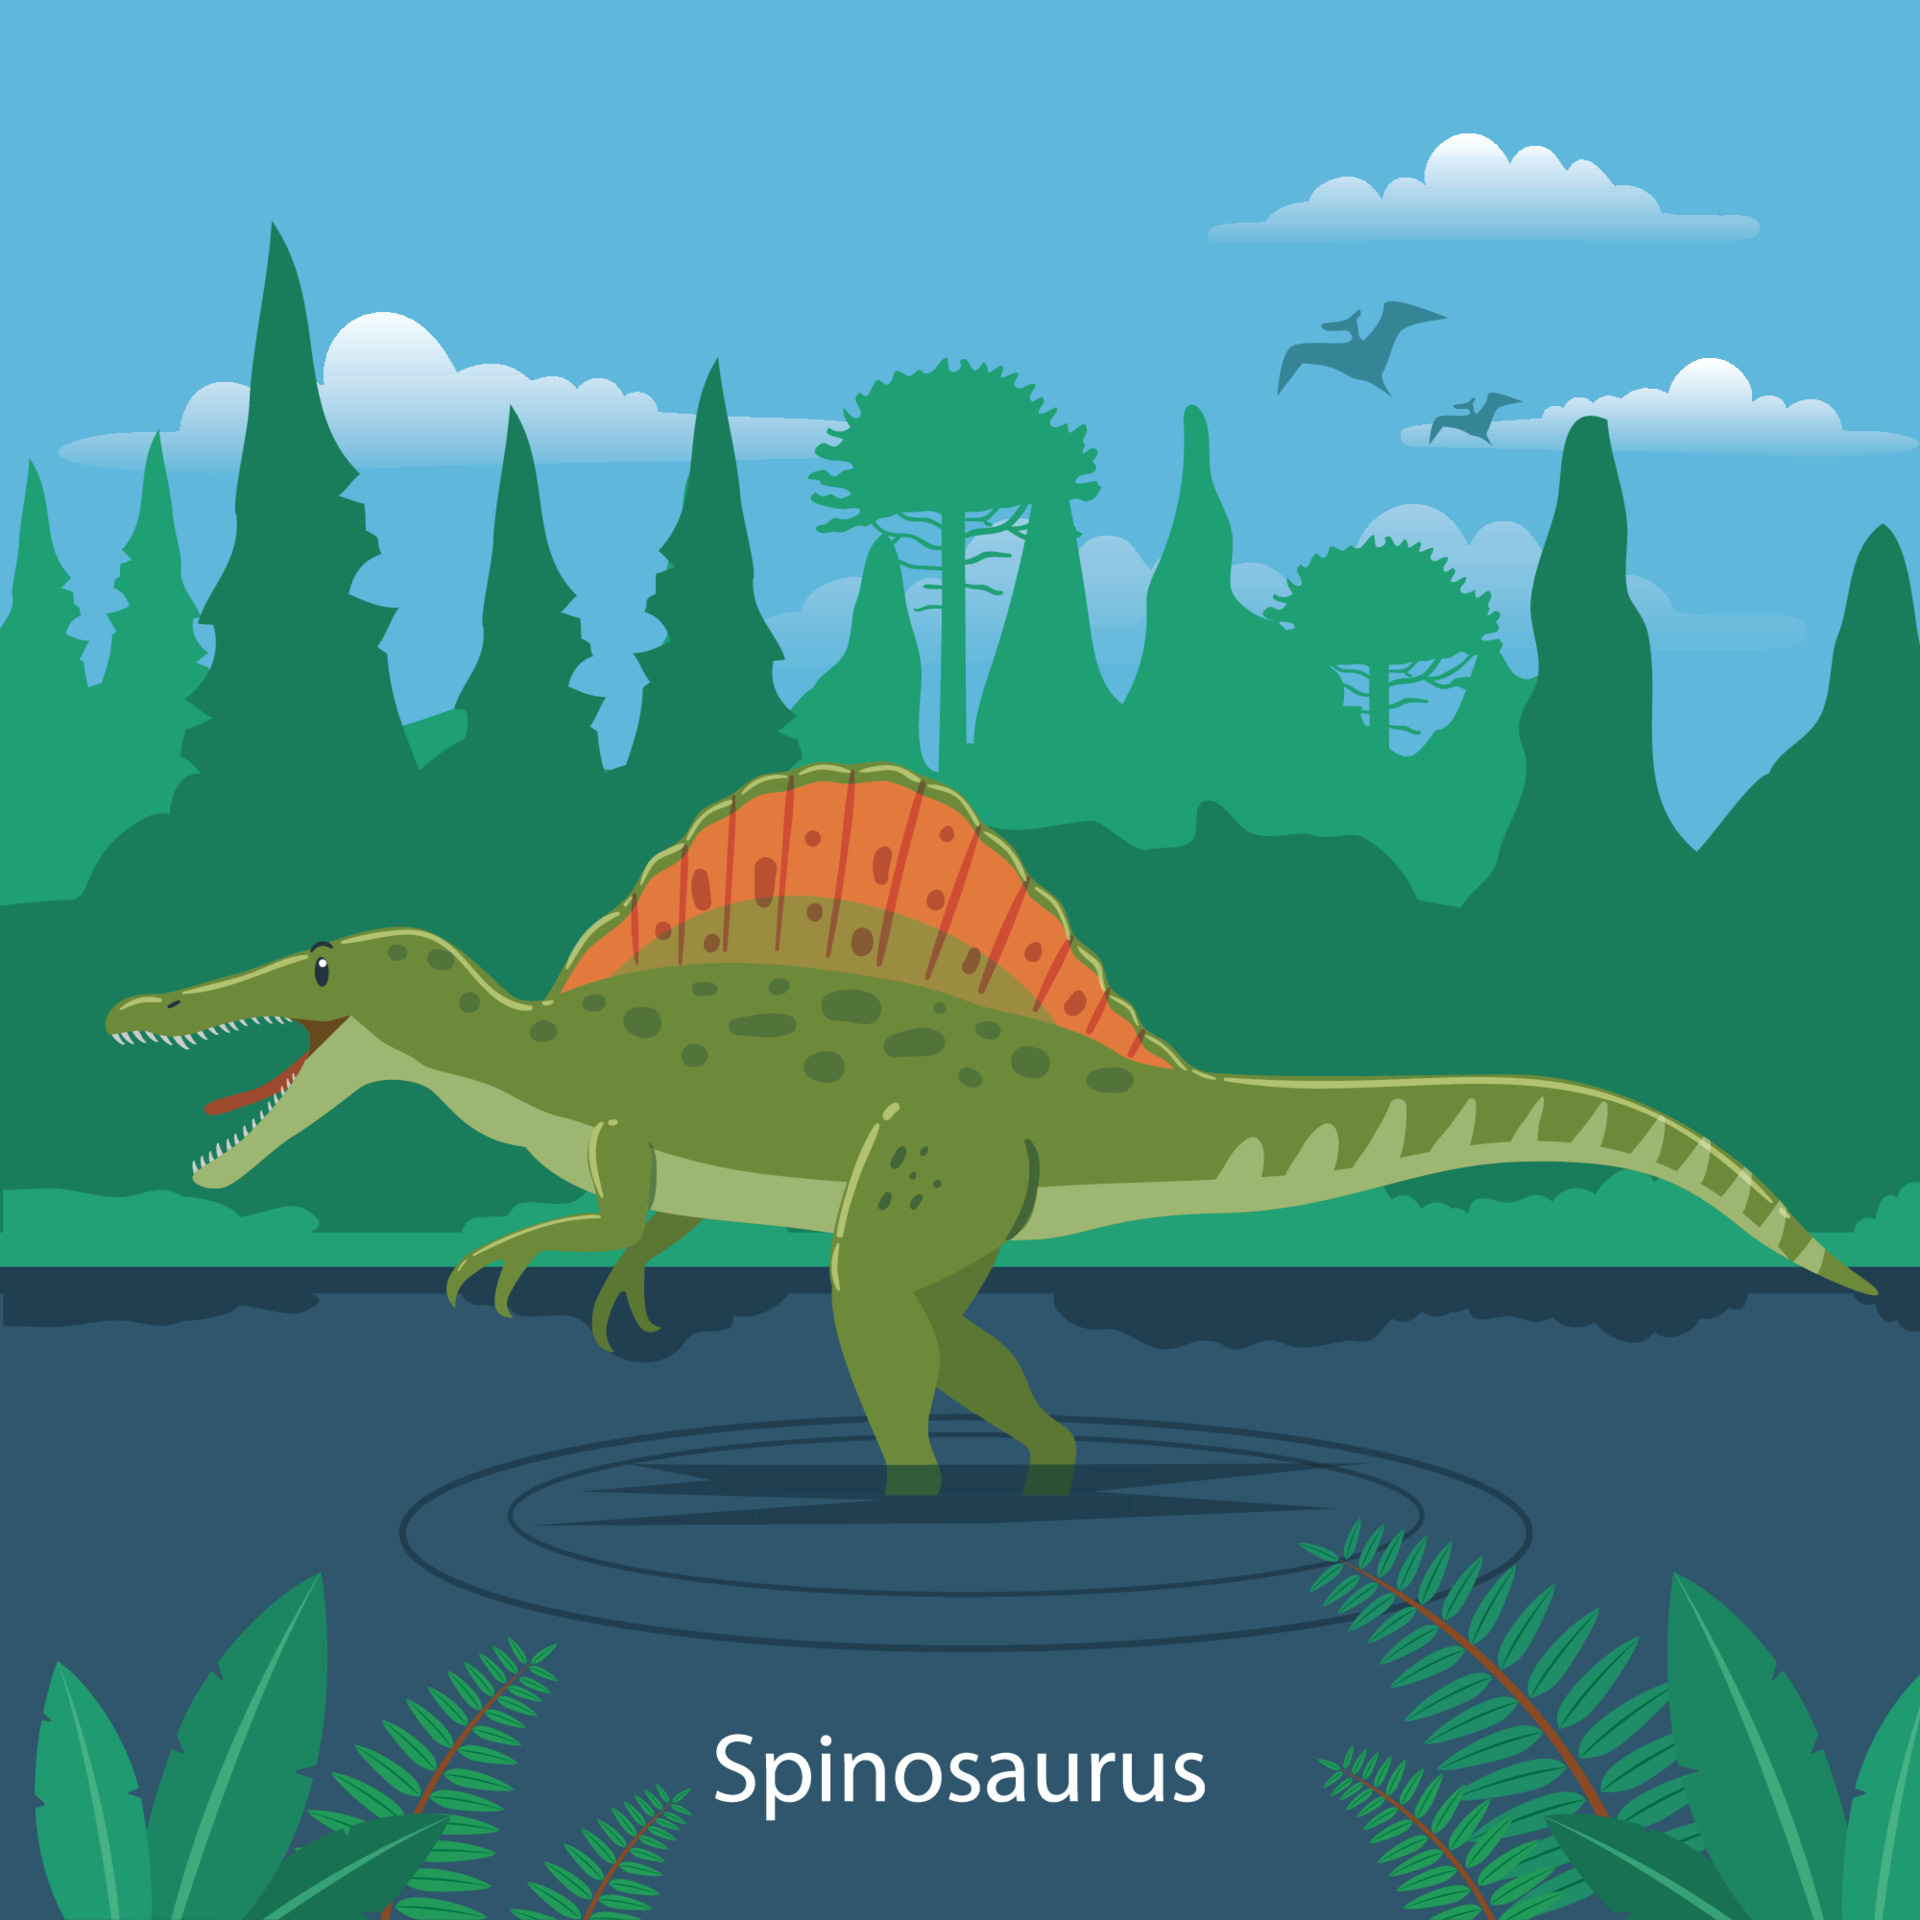 Spinosaurus animal, Prehistorico 4930249 vector, Vector illustration, Illustration download, 1920x1920 HD Handy